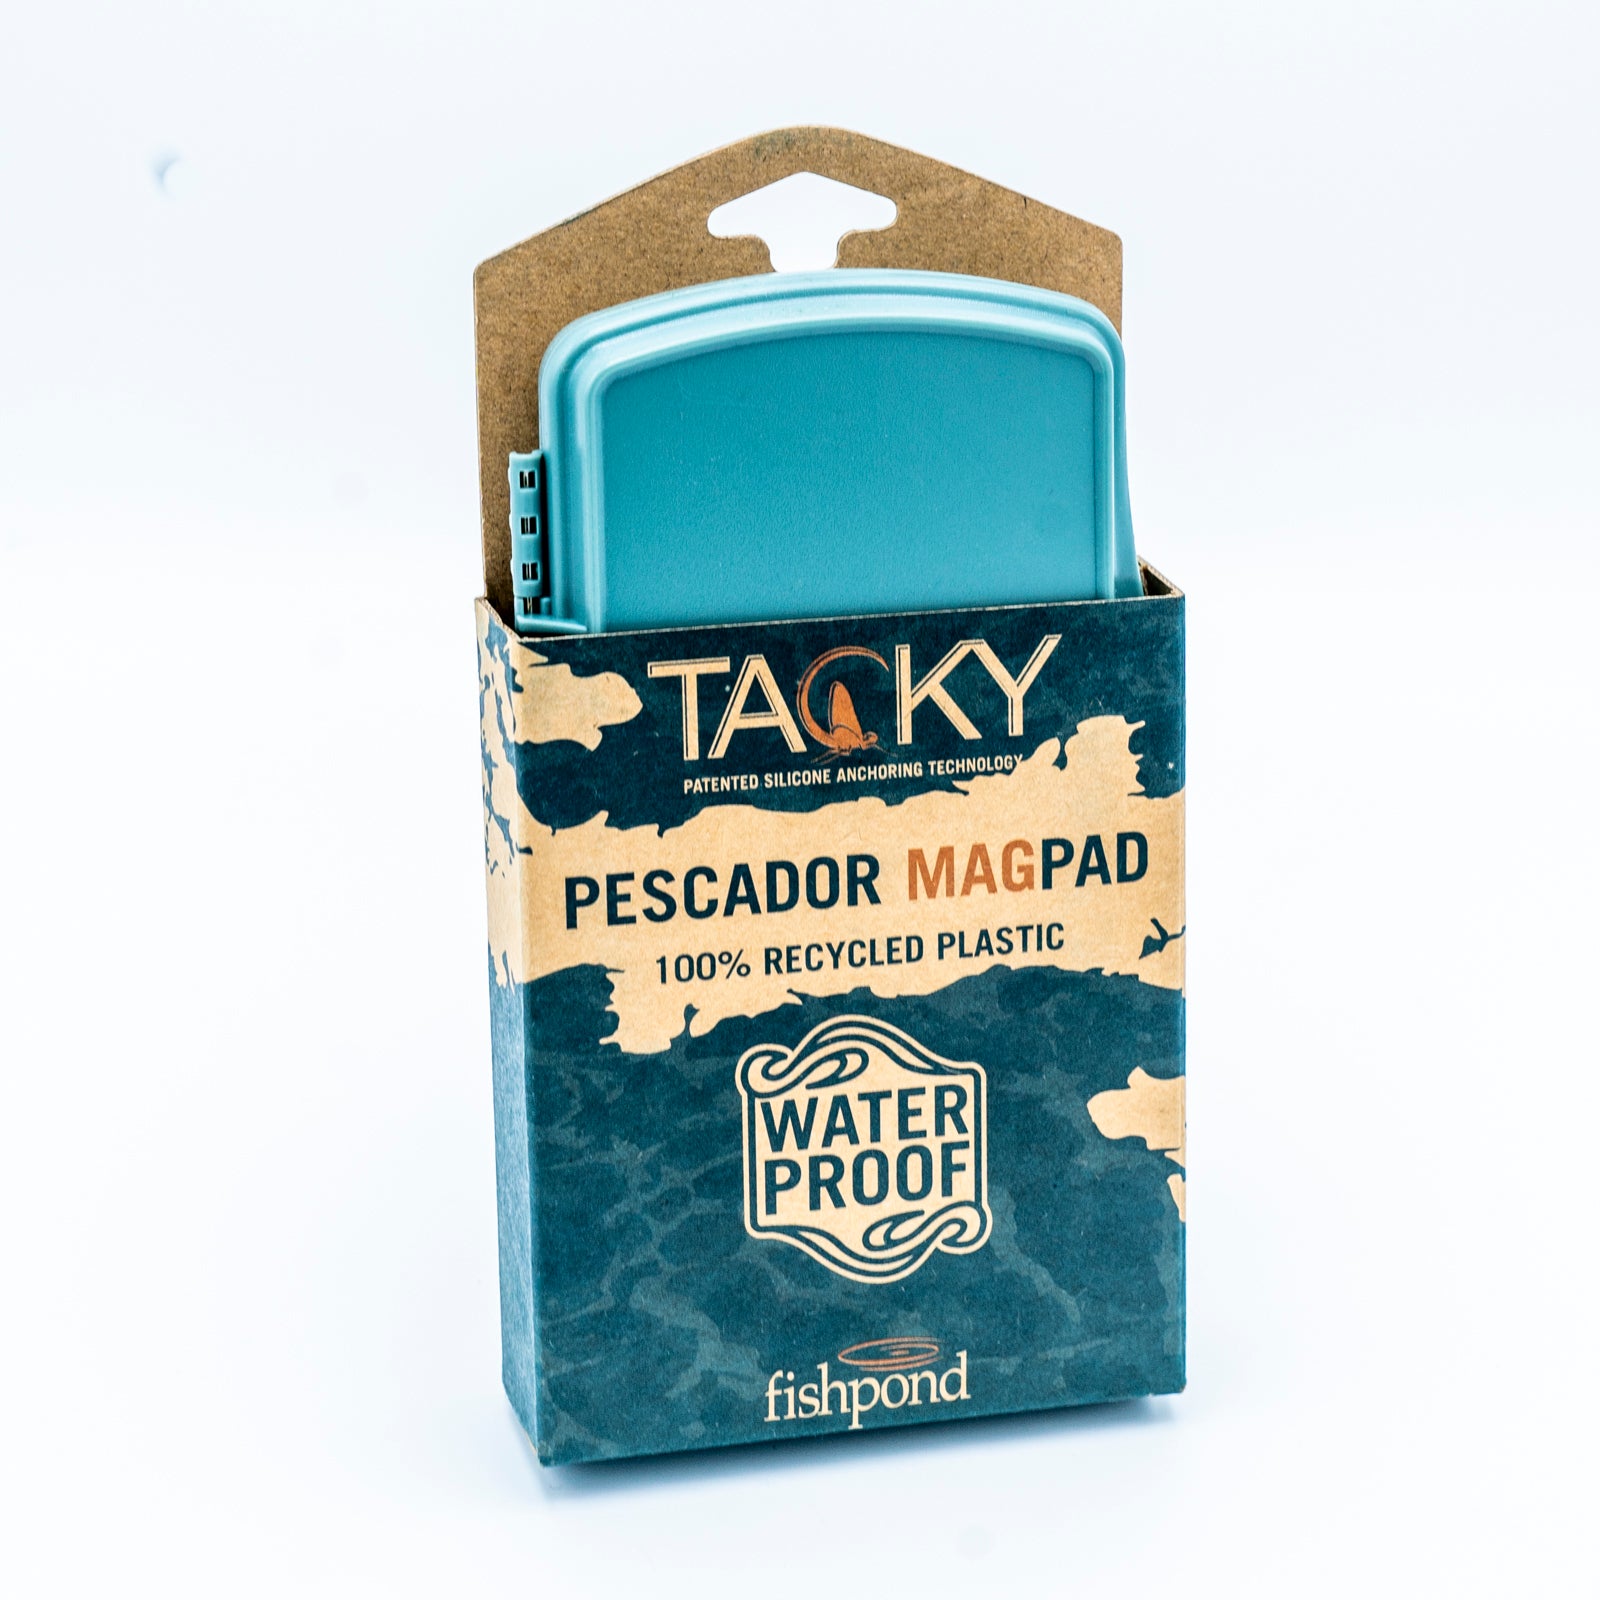 Tacky Pescador Magpad Fly Box - Smoke Grey